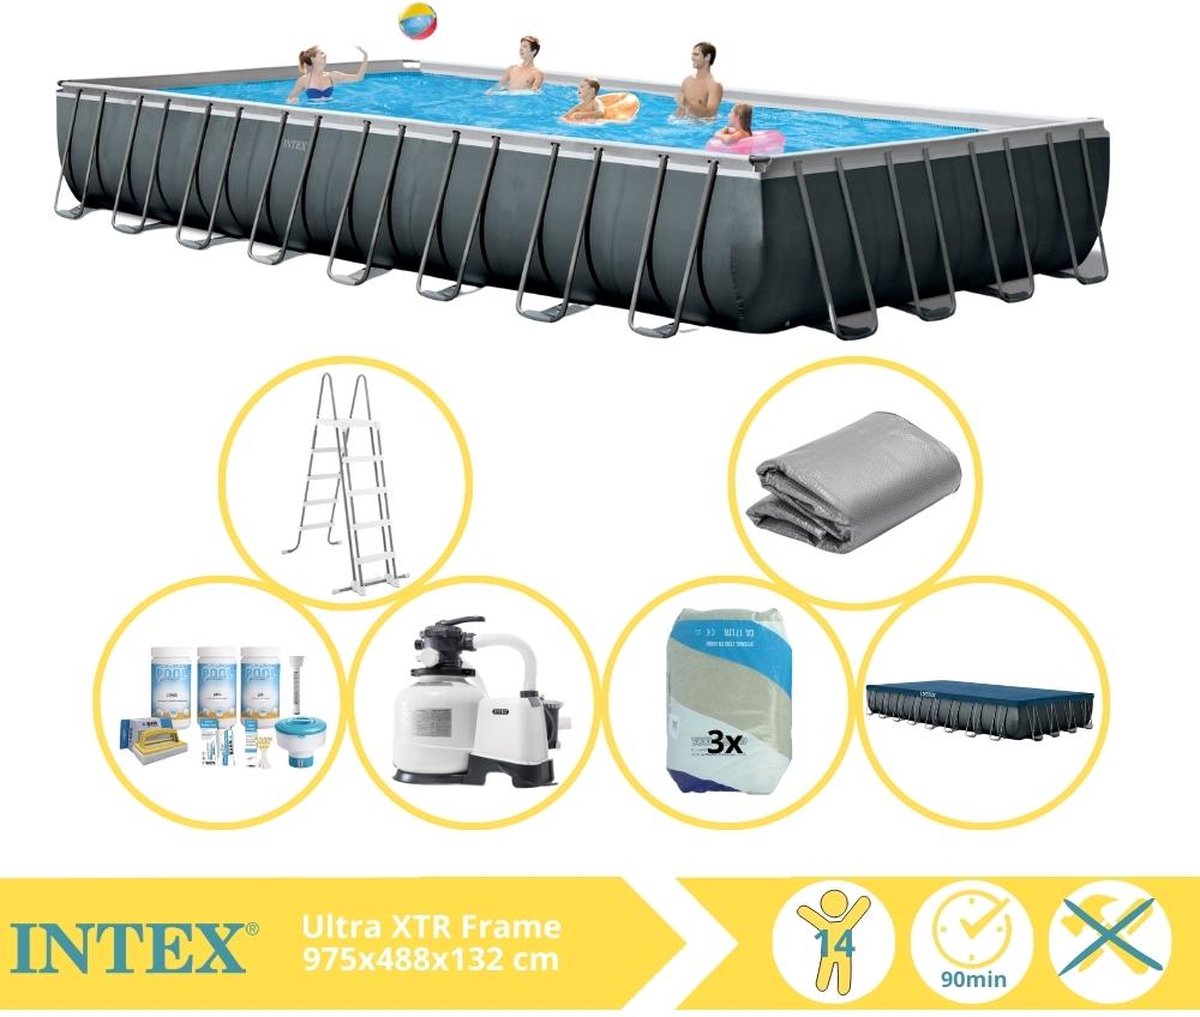 Intex Ultra XTR Frame Zwembad - Opzetzwembad - 975x488x132 cm - Inclusief Onderhoudspakket en Filterzand